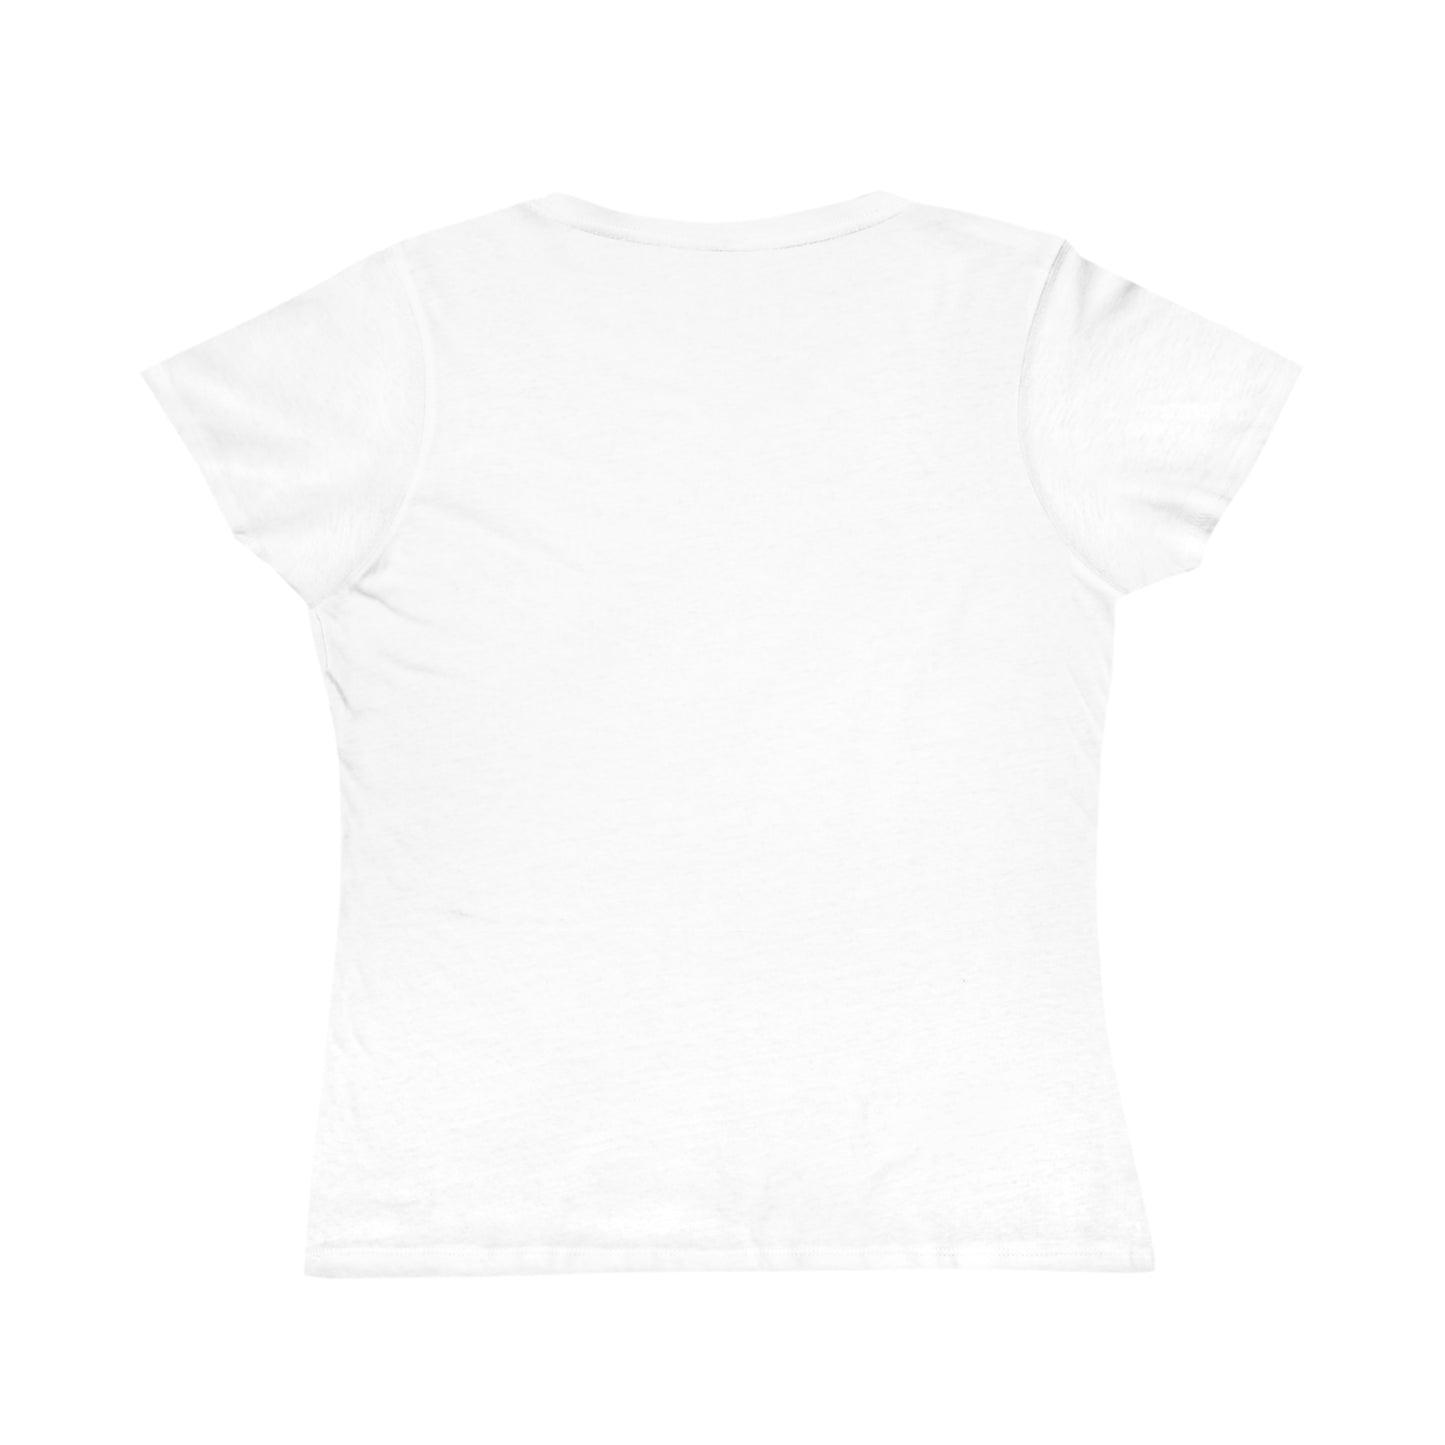 Wonderful Monarchs Women Organic Cotton Single-sided Classic T-Shirt